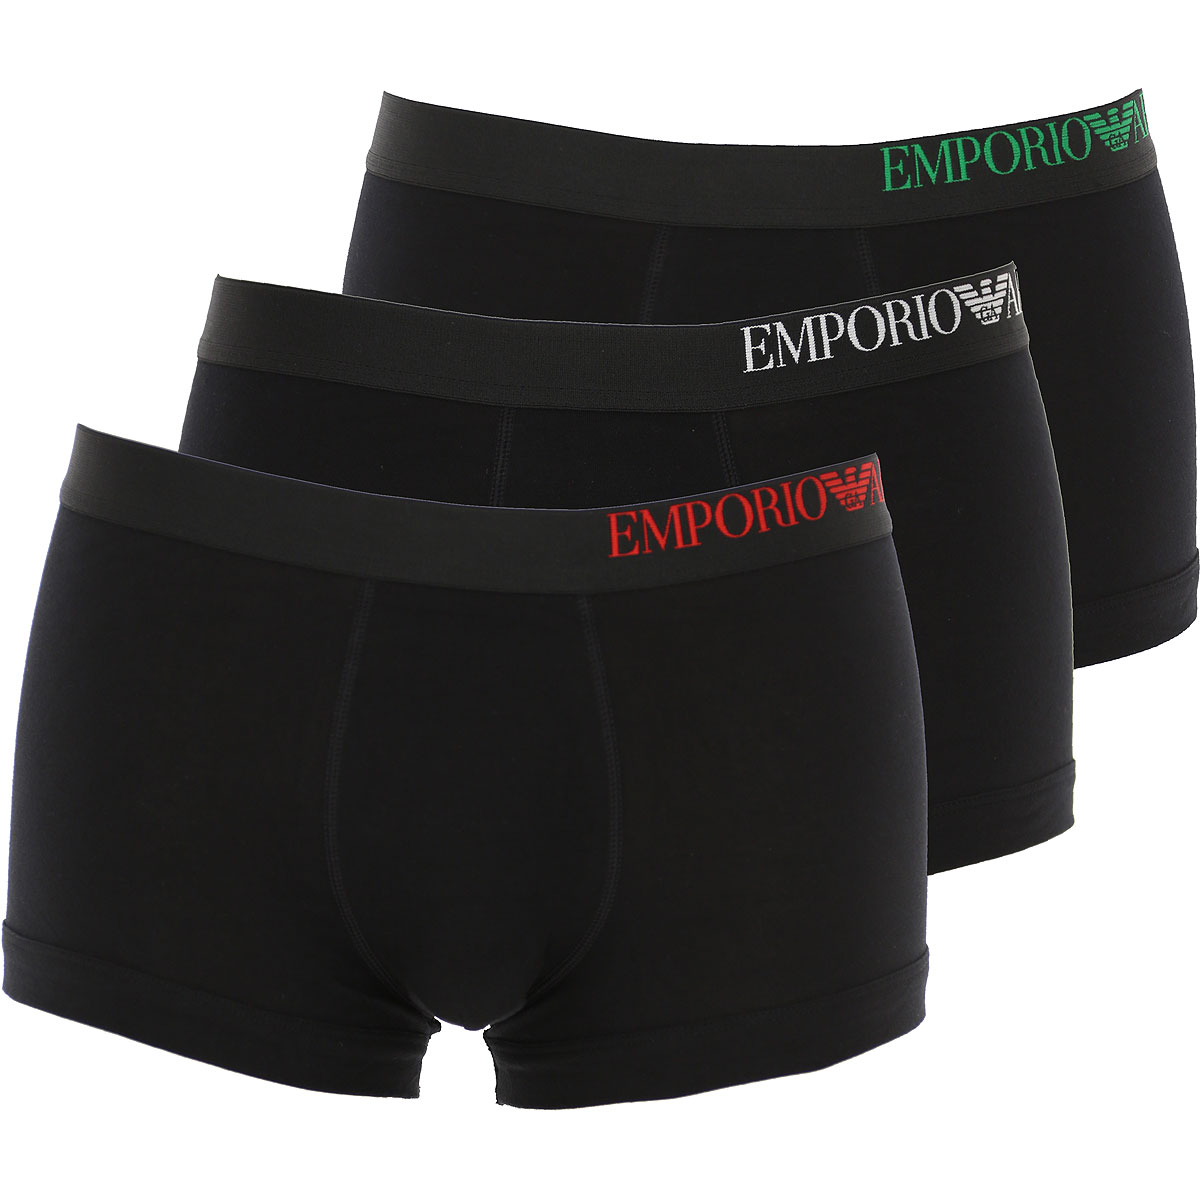 Emporio Armani Boxer Shorts für Herren, Unterhose, Short, Boxer Günstig im Sale, Schwarz, Baumwolle, 2017, L M M S